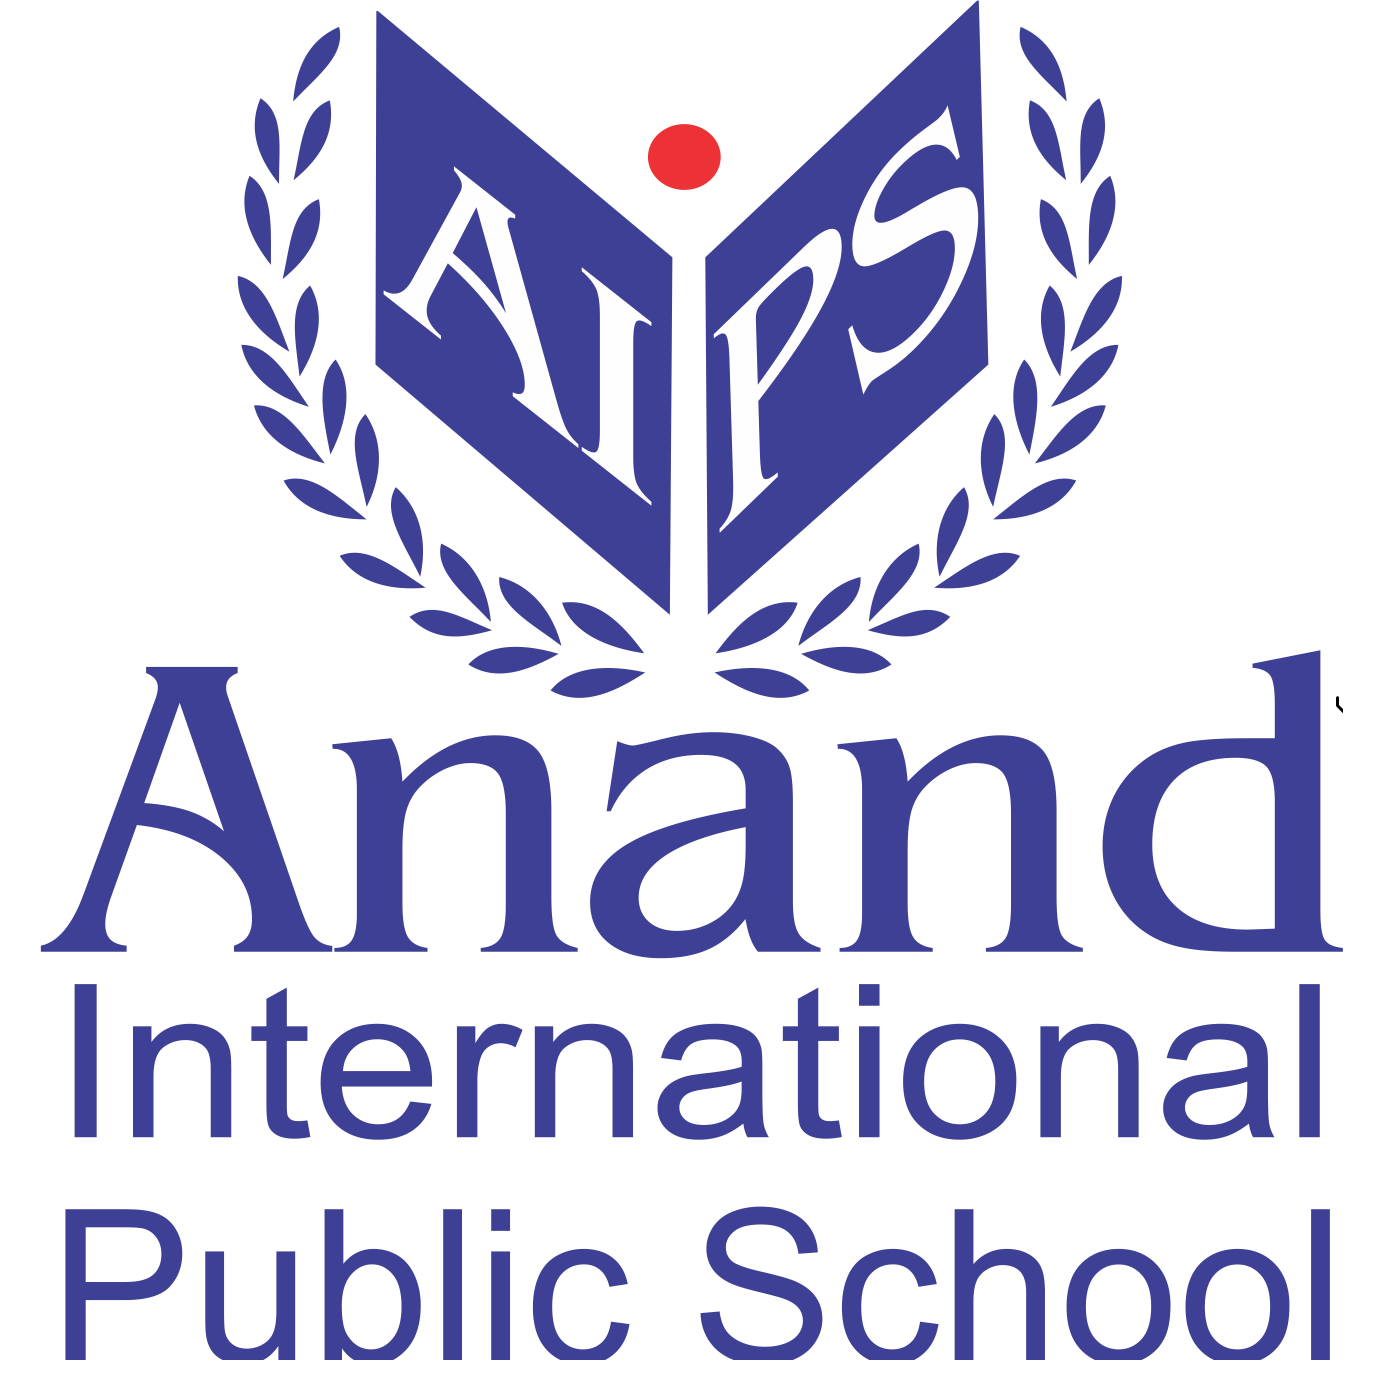 Anand International Public School Logo